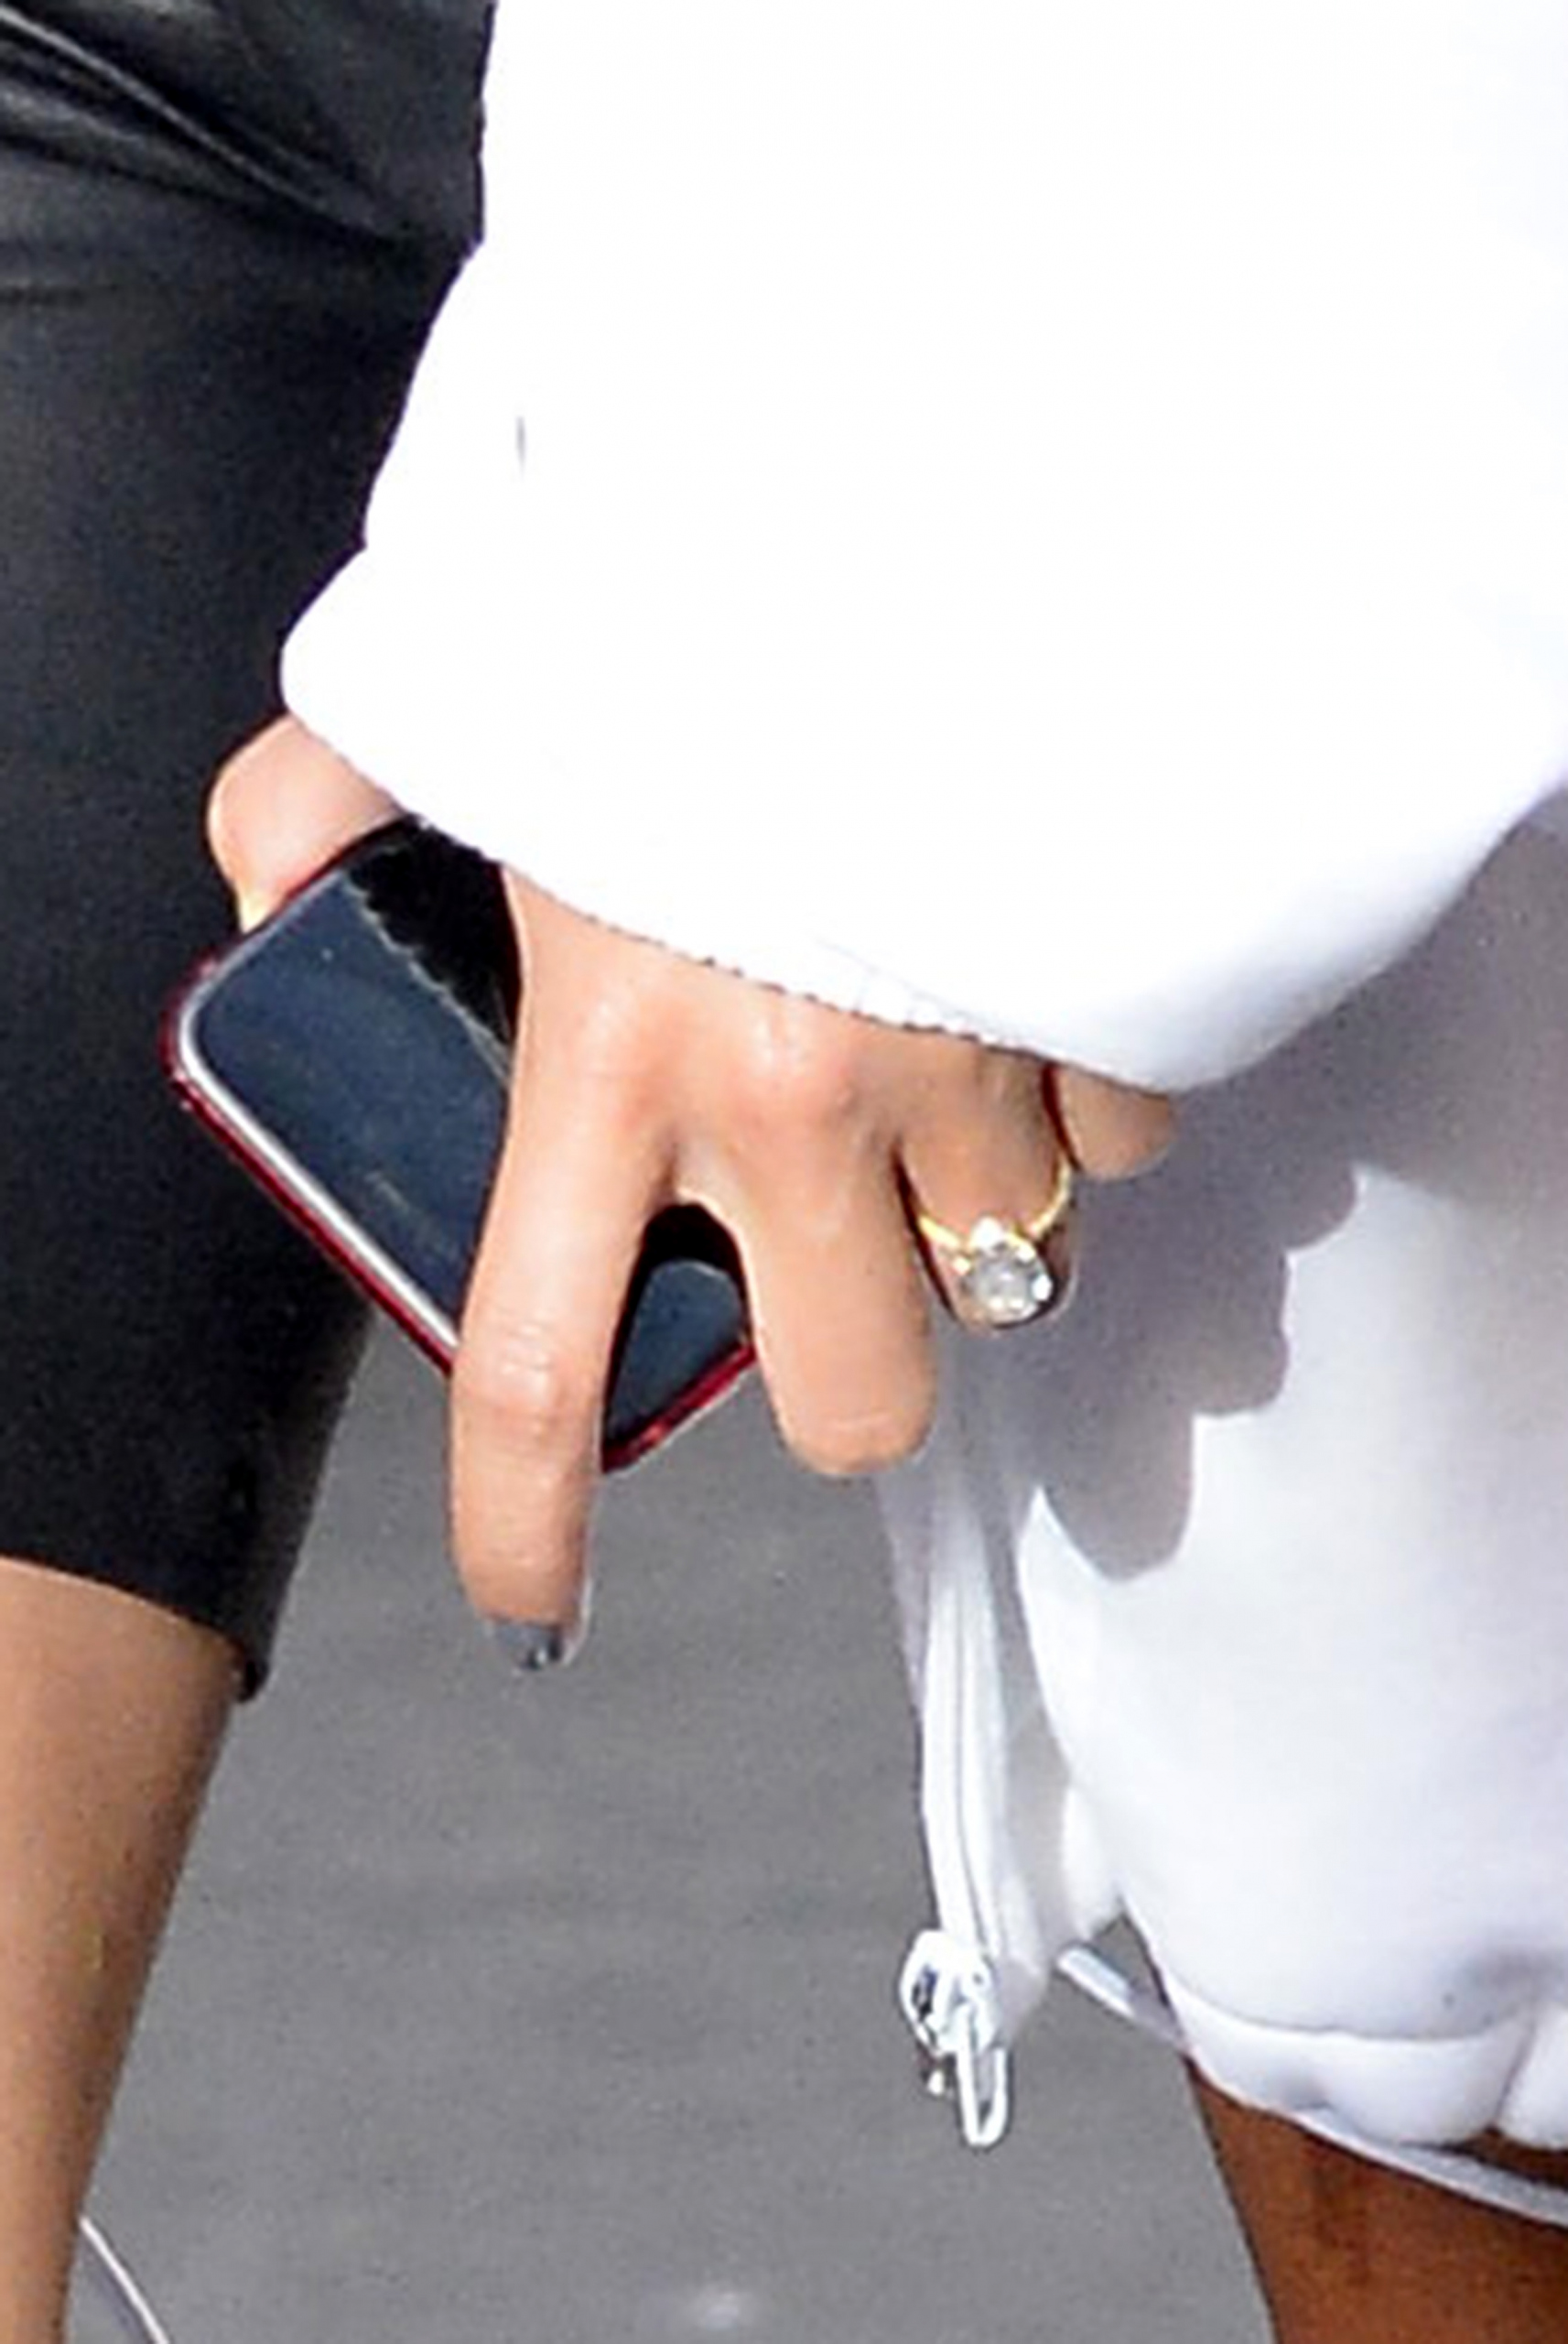 Πόσο κόστισε το δαχτυλίδι αρραβώνων της Hailey Baldwin;